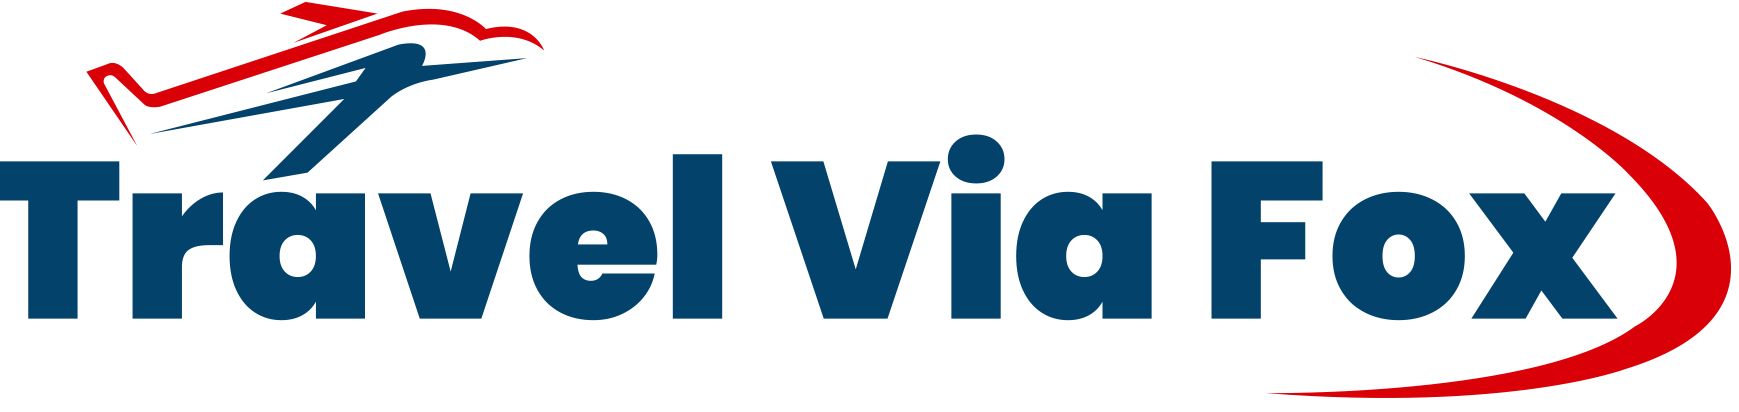 travelviafox logo